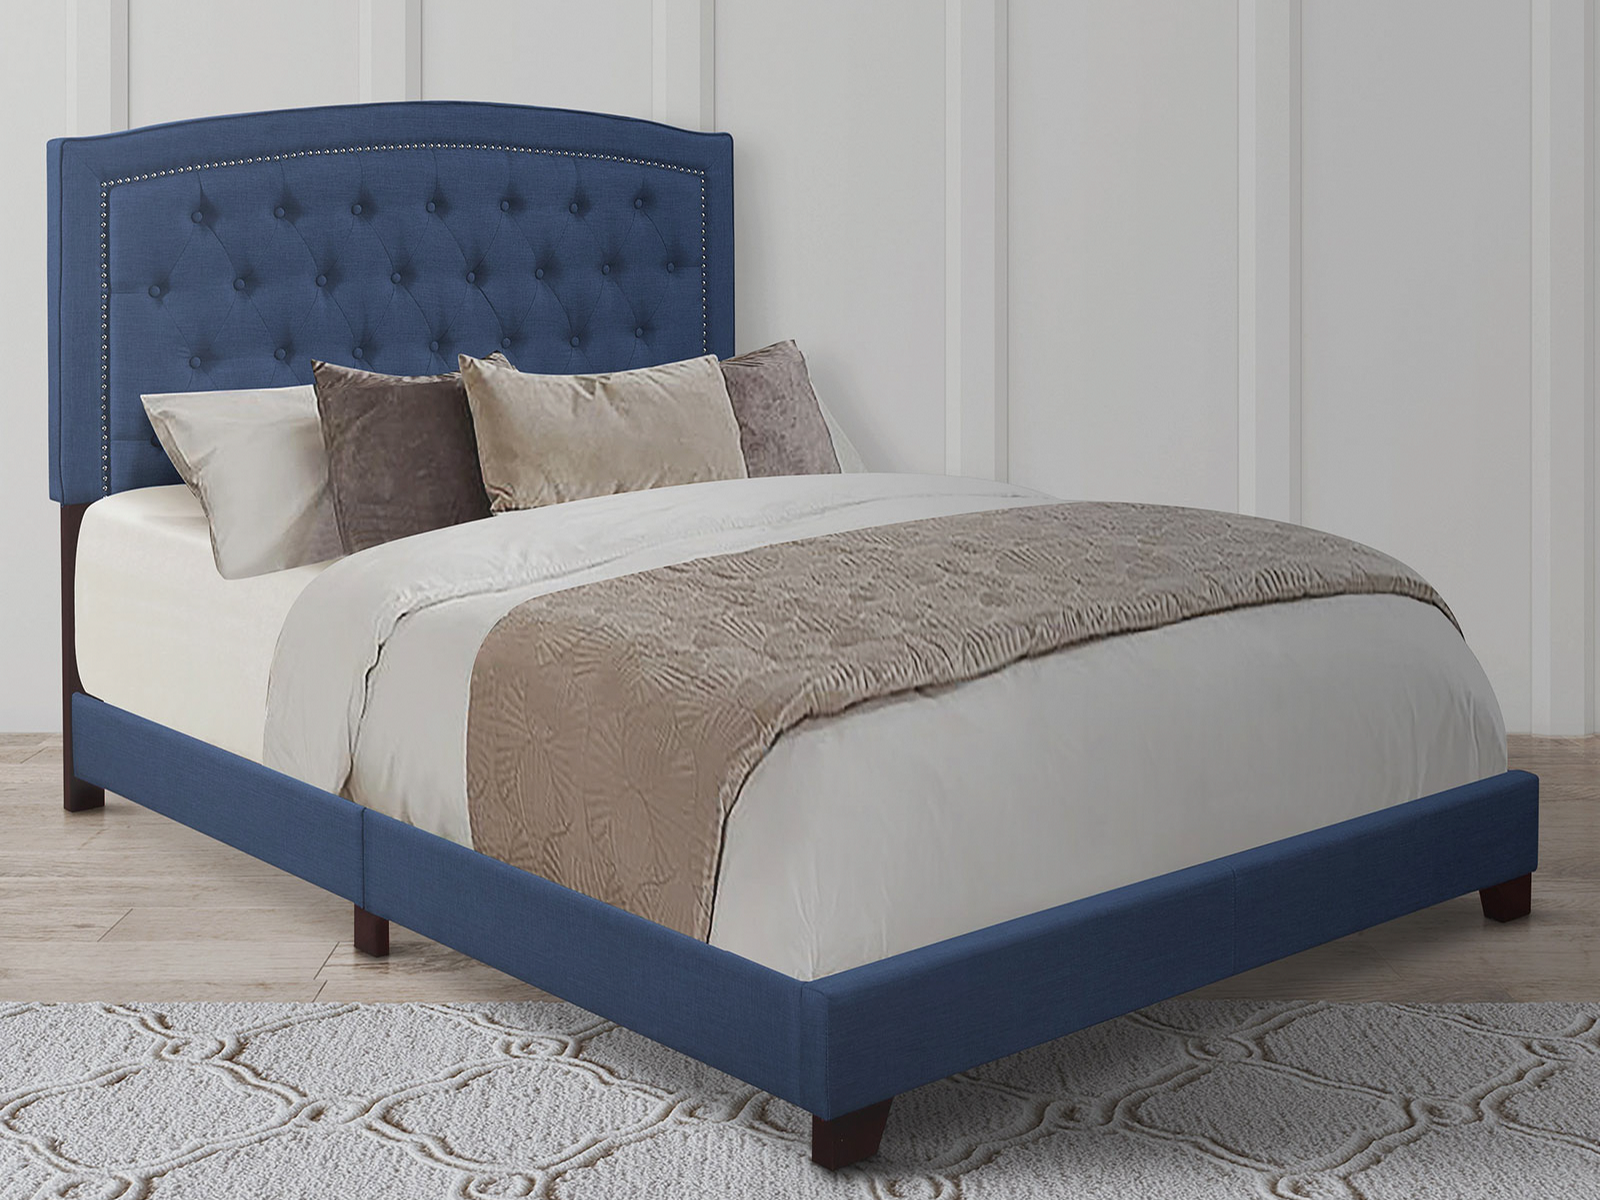 Homelegance Upholstered Bed Set | King | Linden Bed Frame & Headboard | Blue